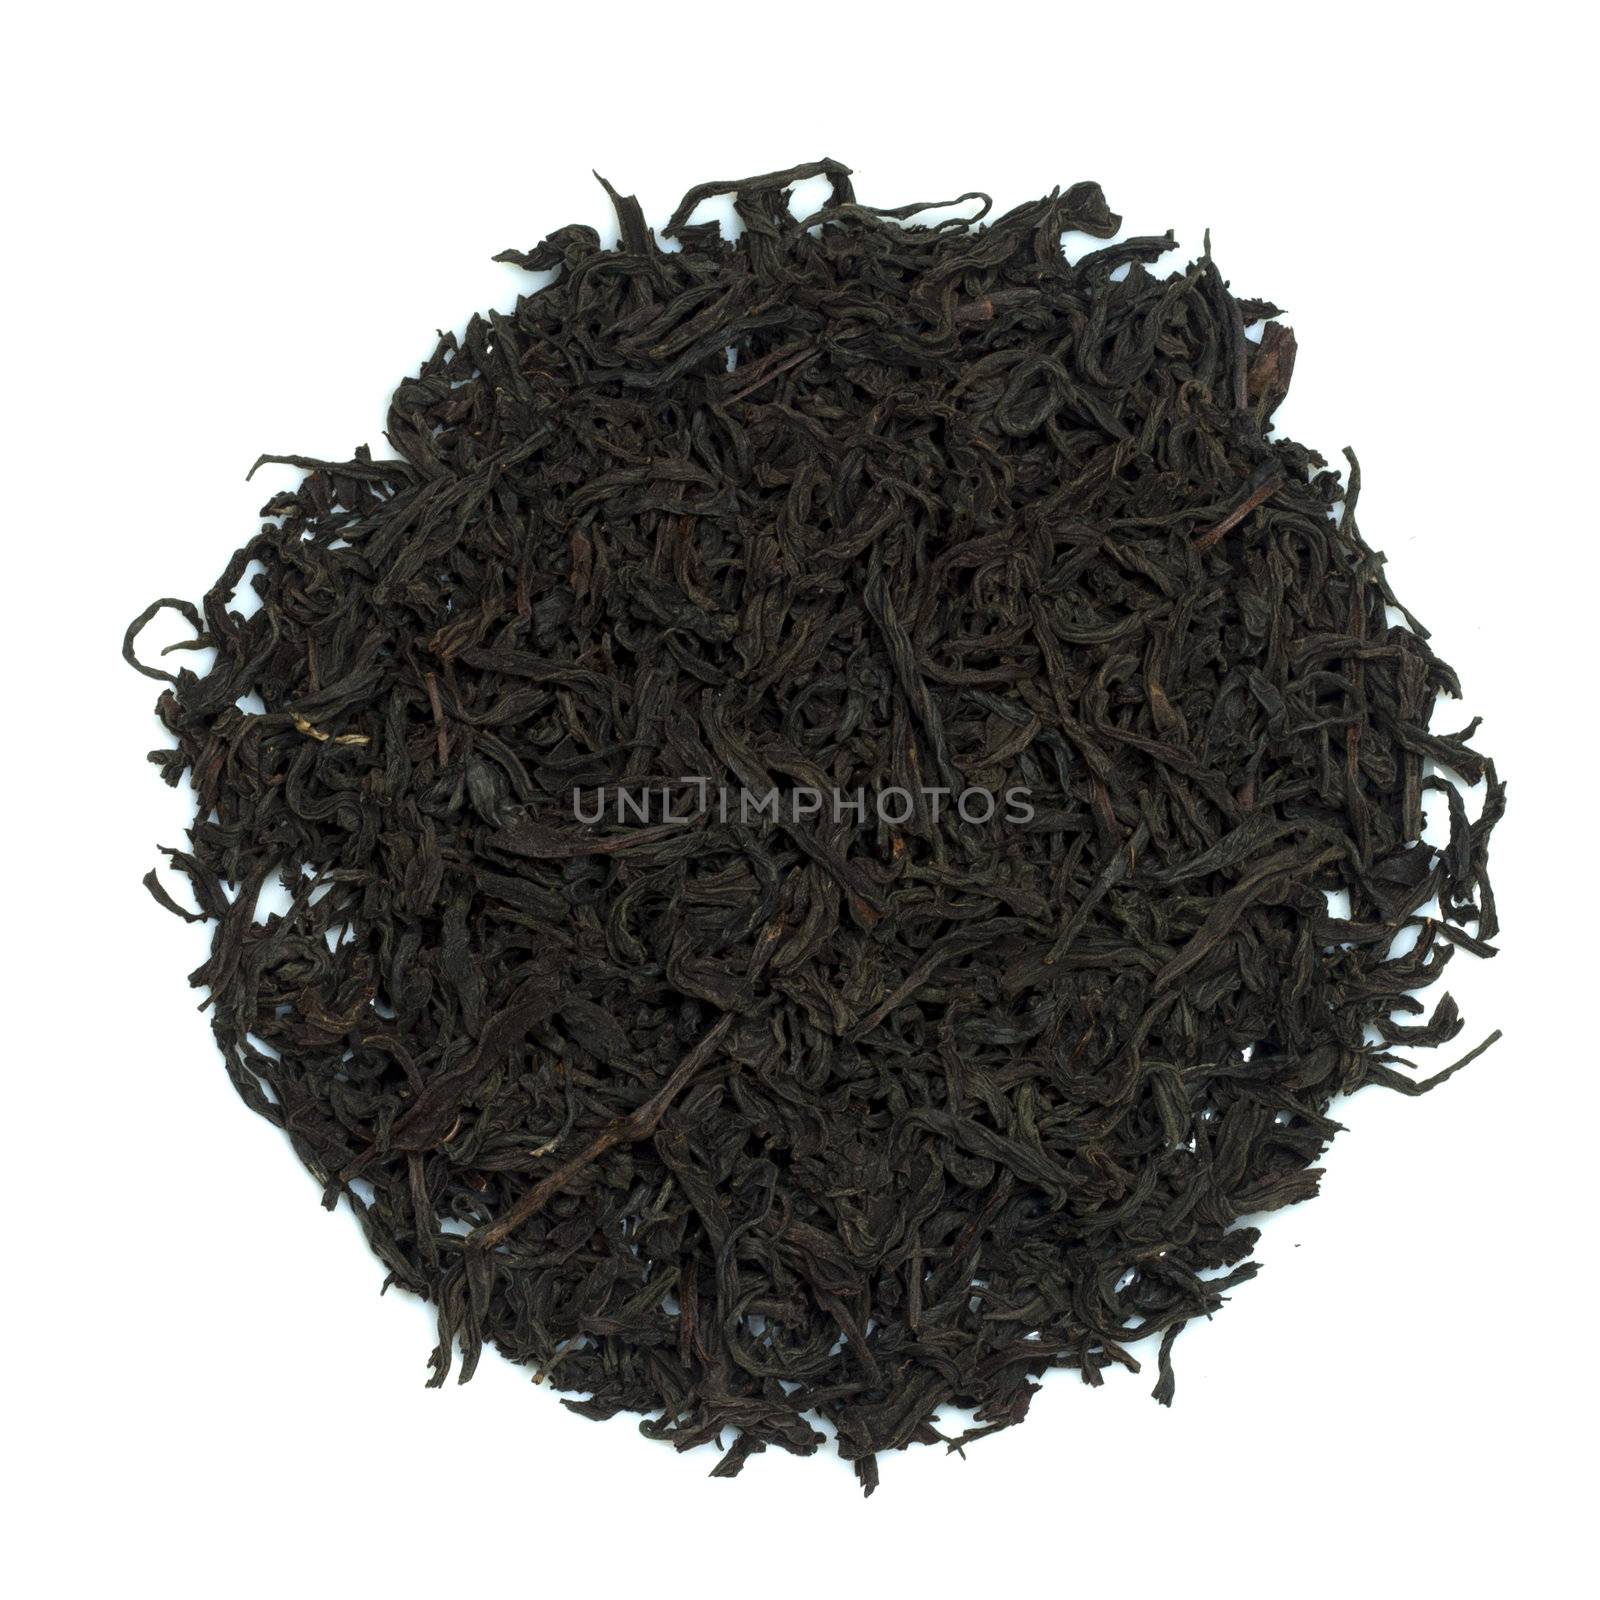 black tea on a white background  by schankz